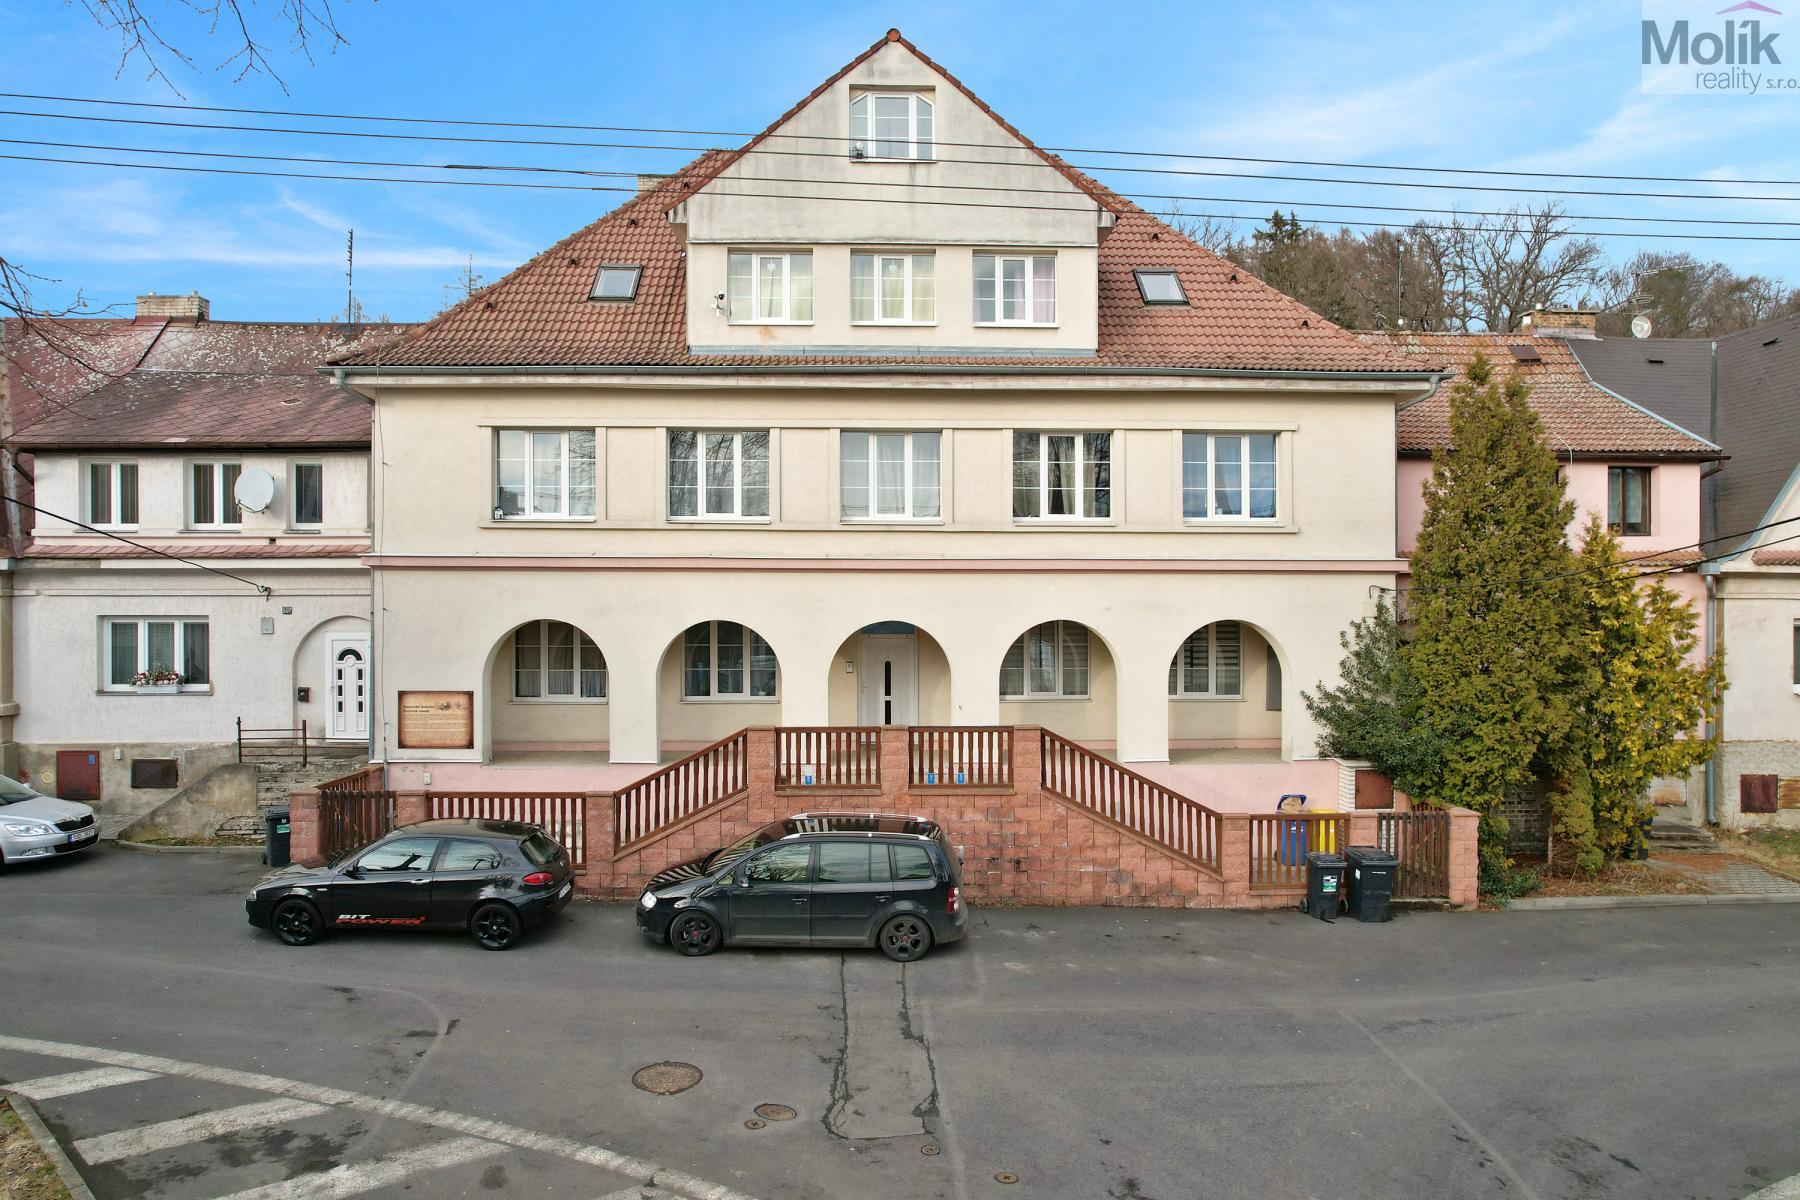 Bytový dům , 626 m2, Lom u Mostu, ul. Havlíčkovo náměstí 508/23.